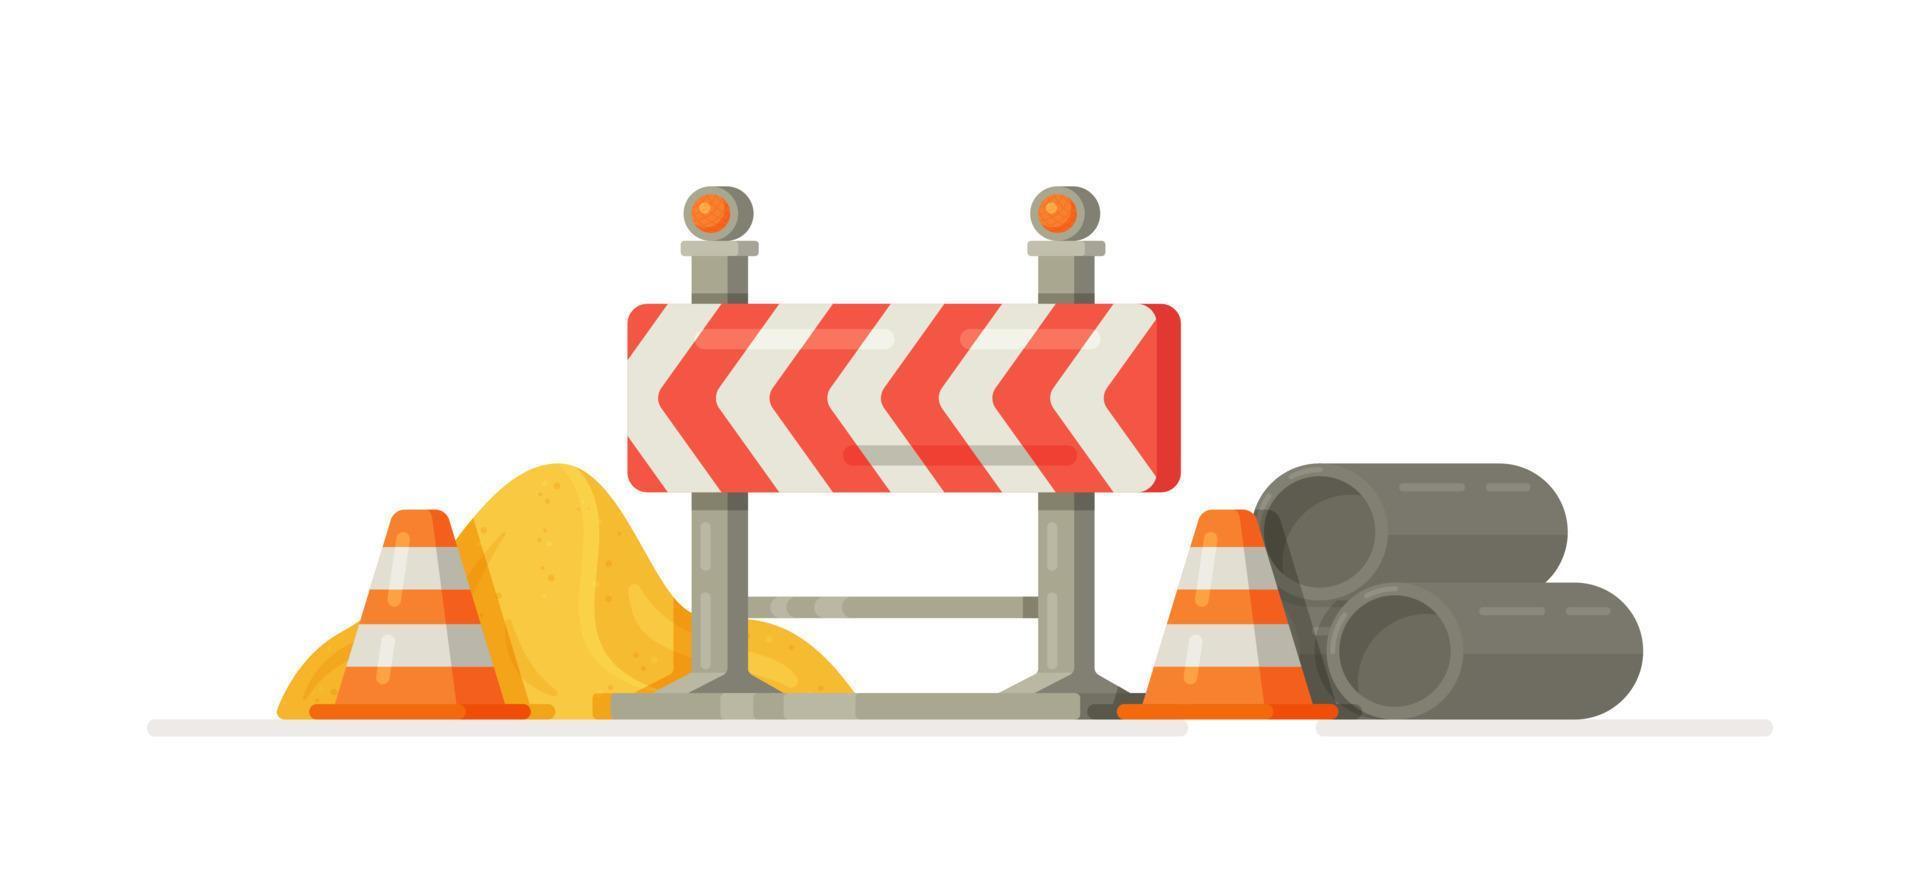 vektor illustration av en vägar blockera. väg säkerhet och olycka förebyggande i väg konstruktion.